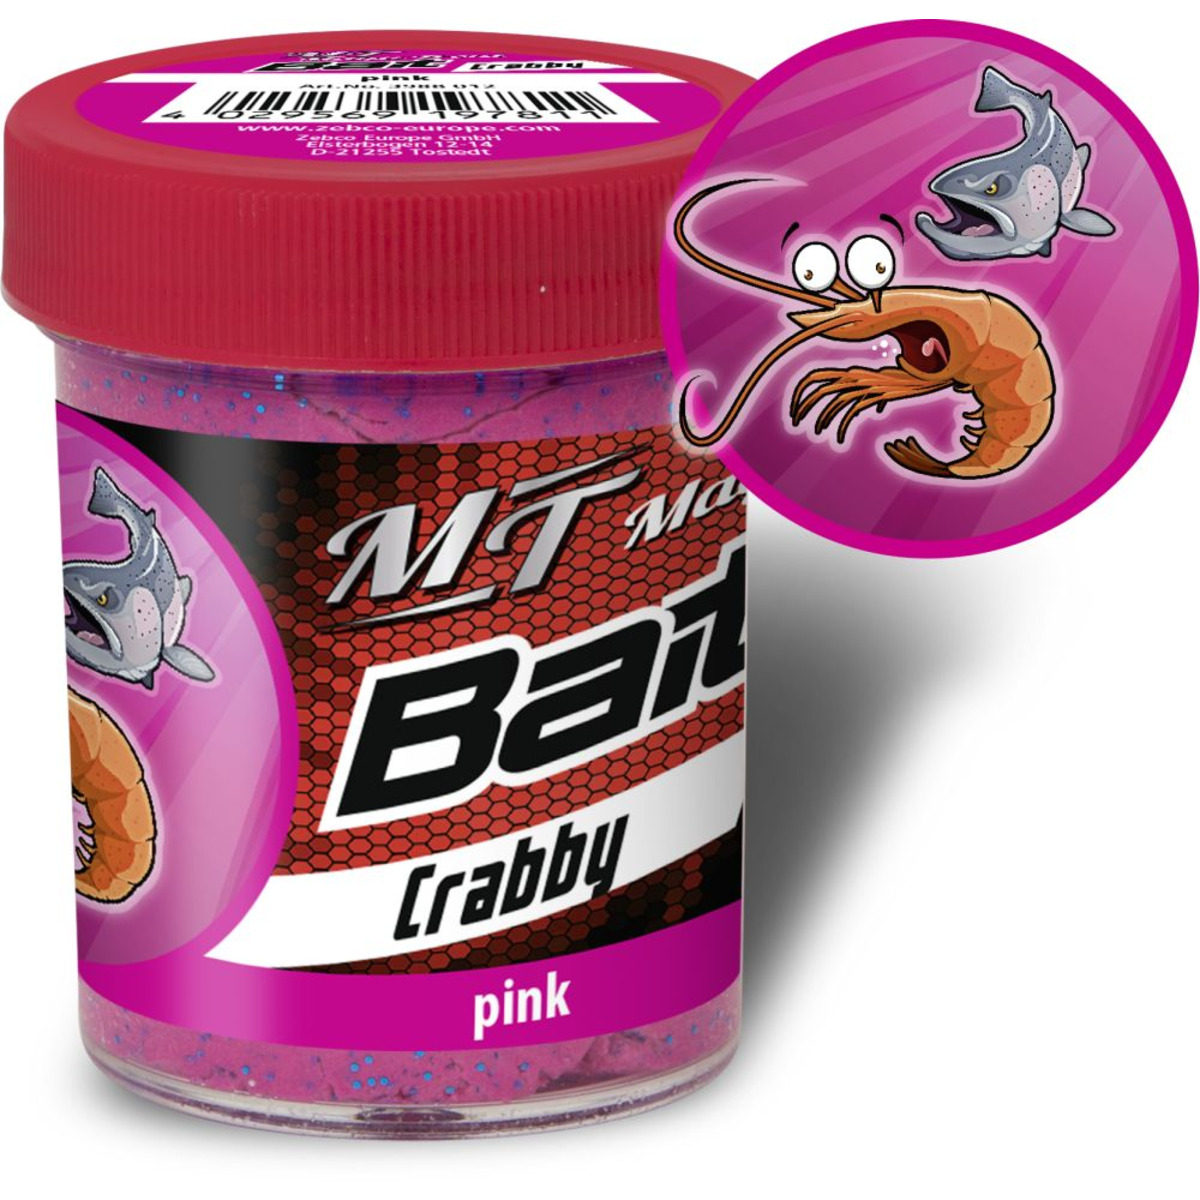 Magic Trout Trout Bait Taste - Crabby-pink